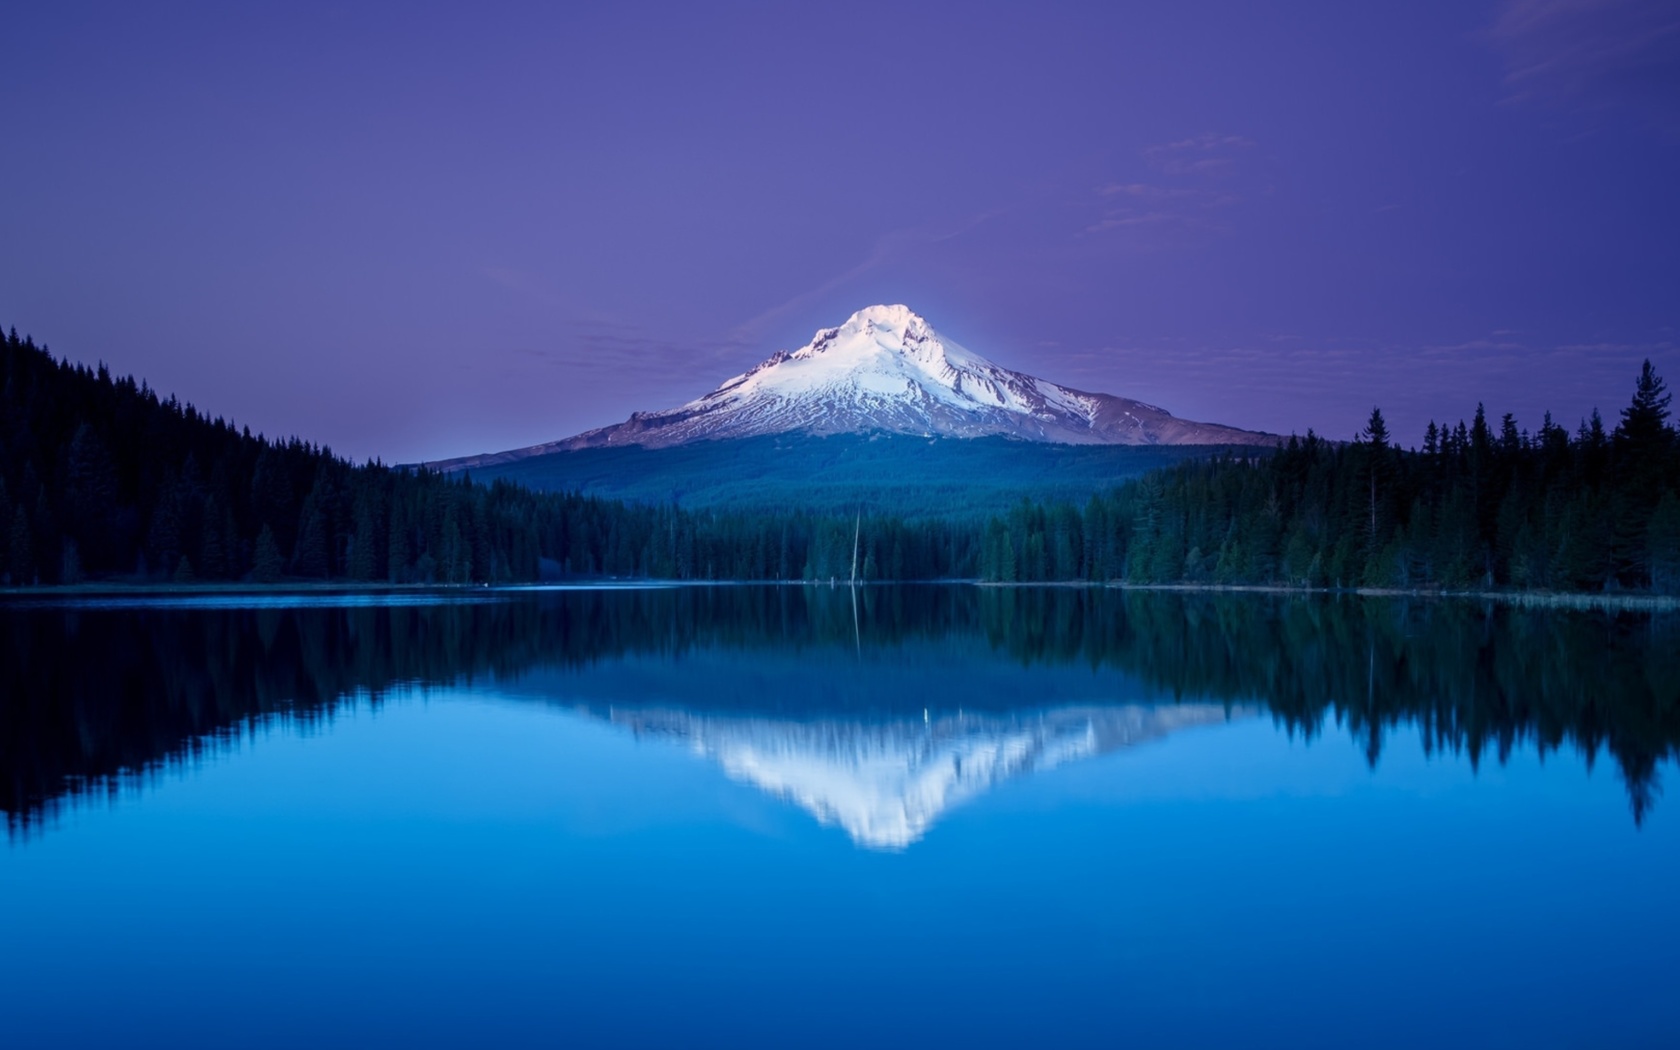 Обои Mountains with lake reflection 1680x1050